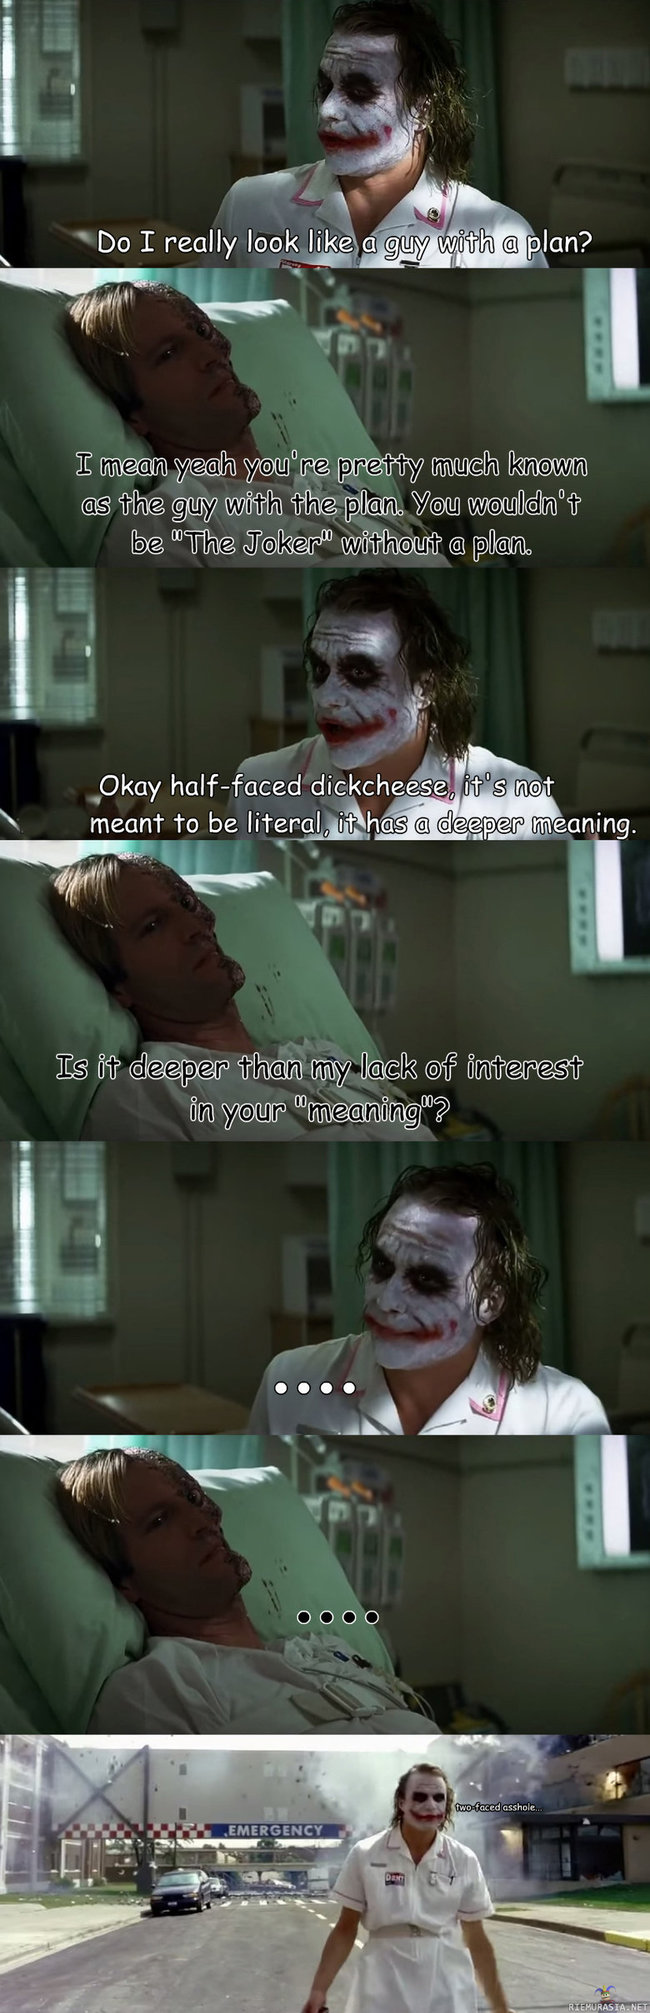 Jokeri ja Two-face